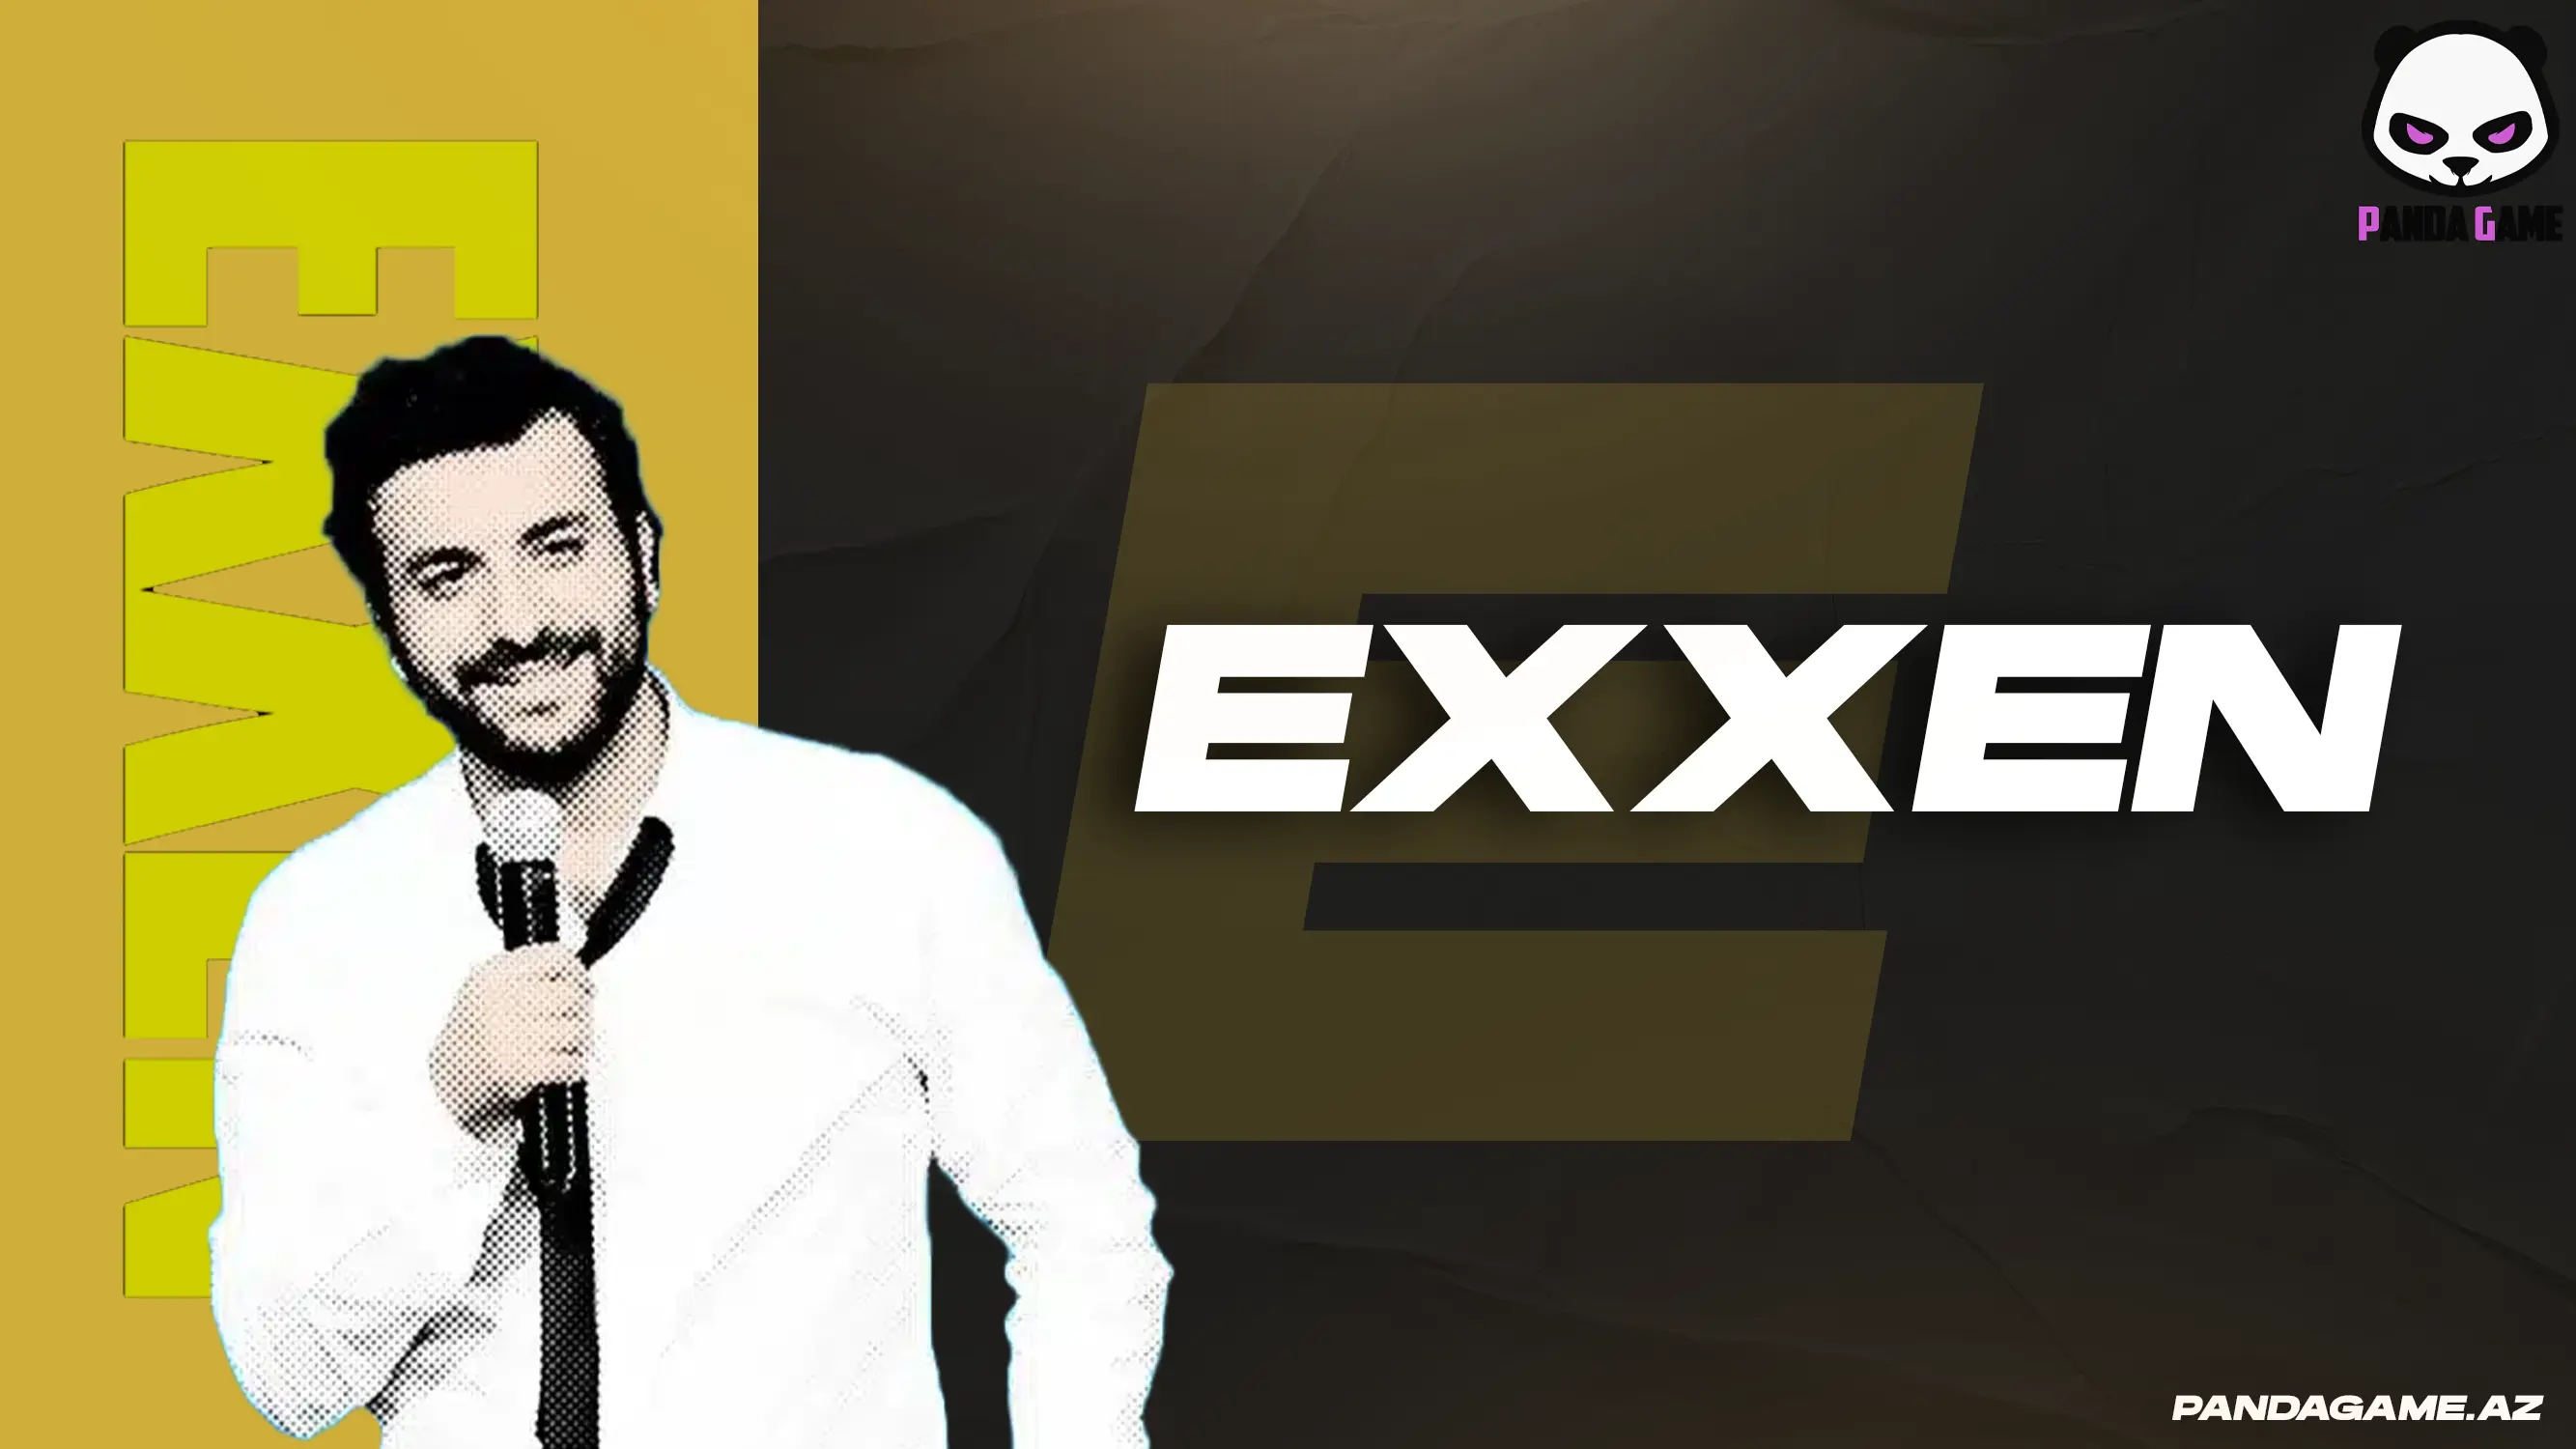 Exxen